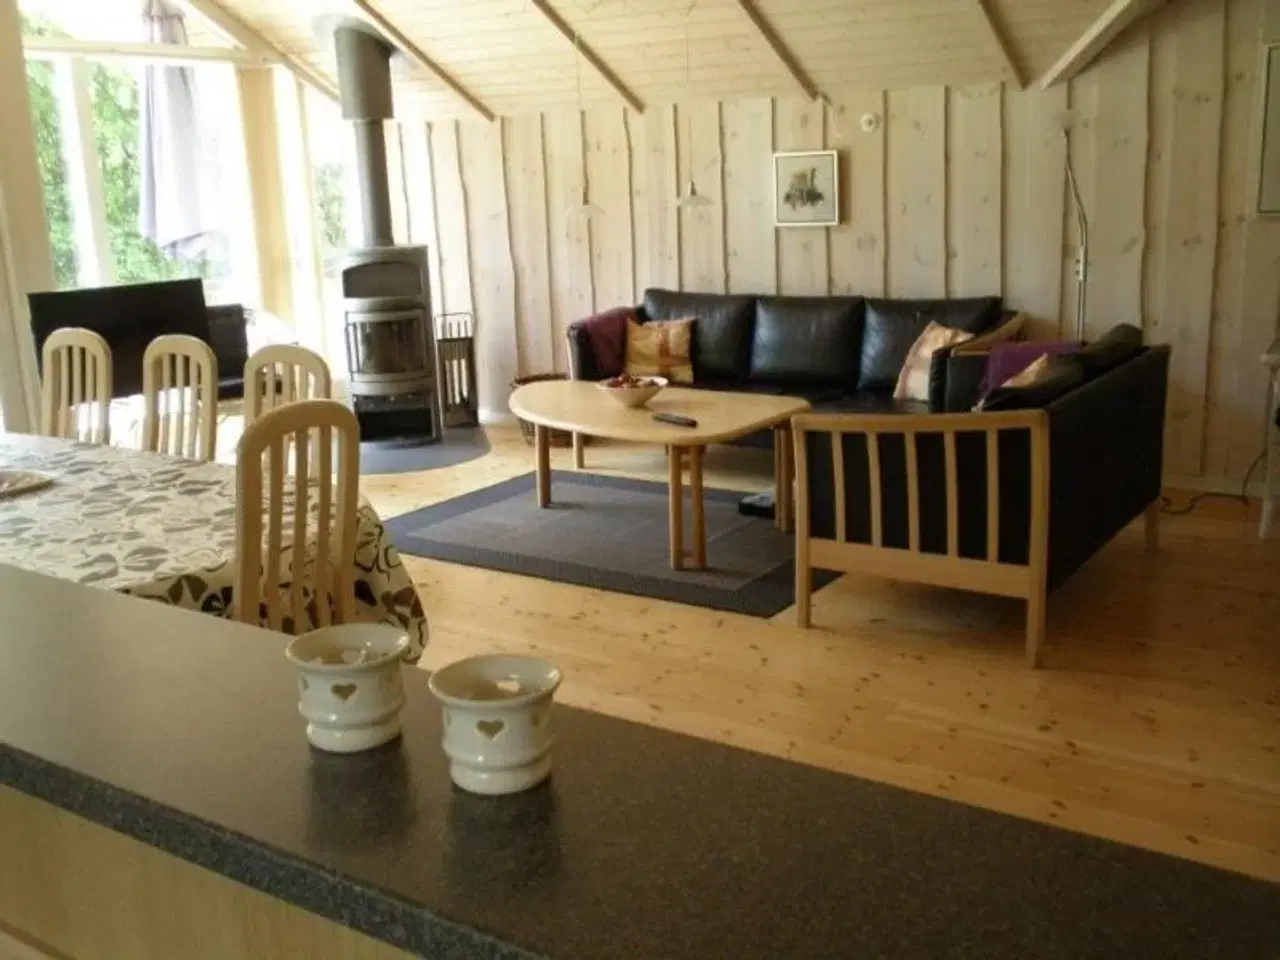 Billede 3 - Luksushus med spa, sauna. I hjertet af Arrildferieby. Sommerhus kun 200m til badeland med fri entre. Og 200m til fiskesø